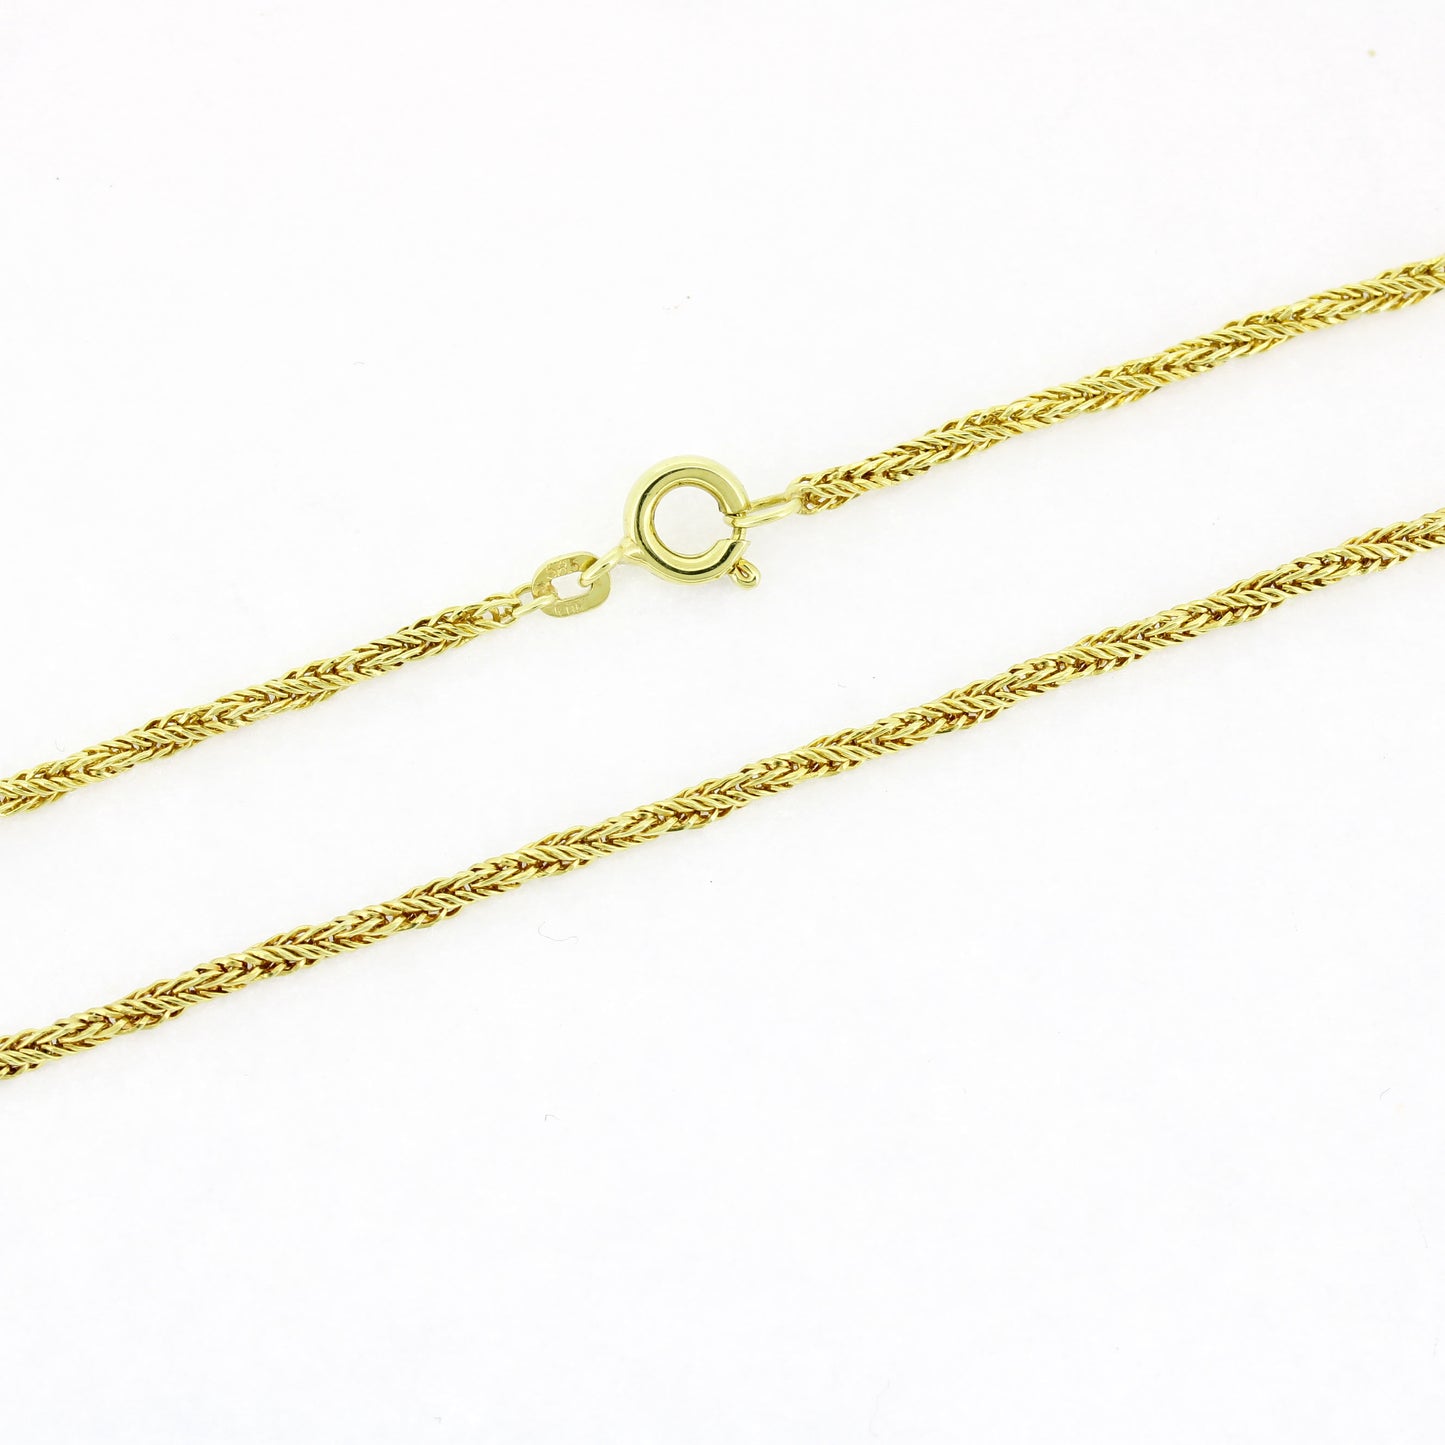 Lange Halskette geflochten 585 Gold 14 Kt Gelbgold 70cm - Wert 1270,-